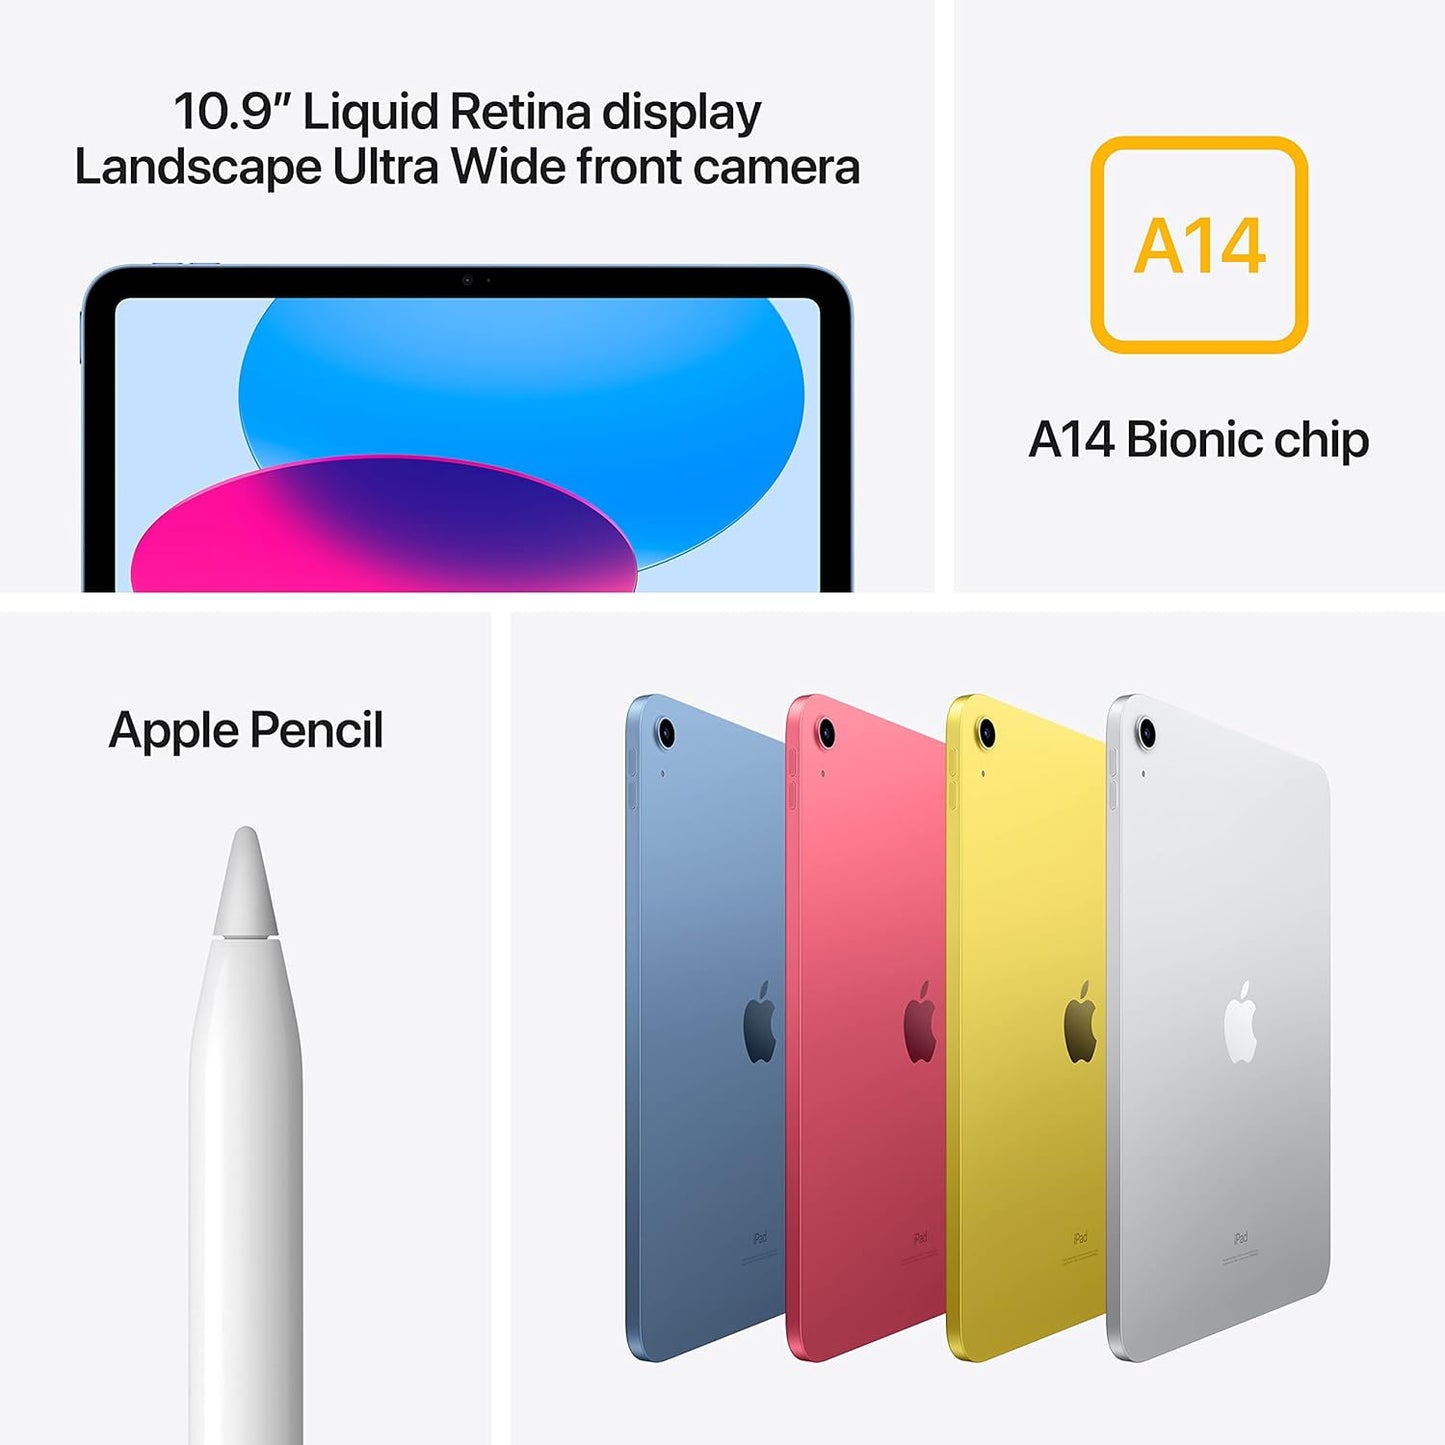 Apple 2022 10.9-inch iPad (Wi-Fi + Cellular, 256GB) - Silver (10th generation)